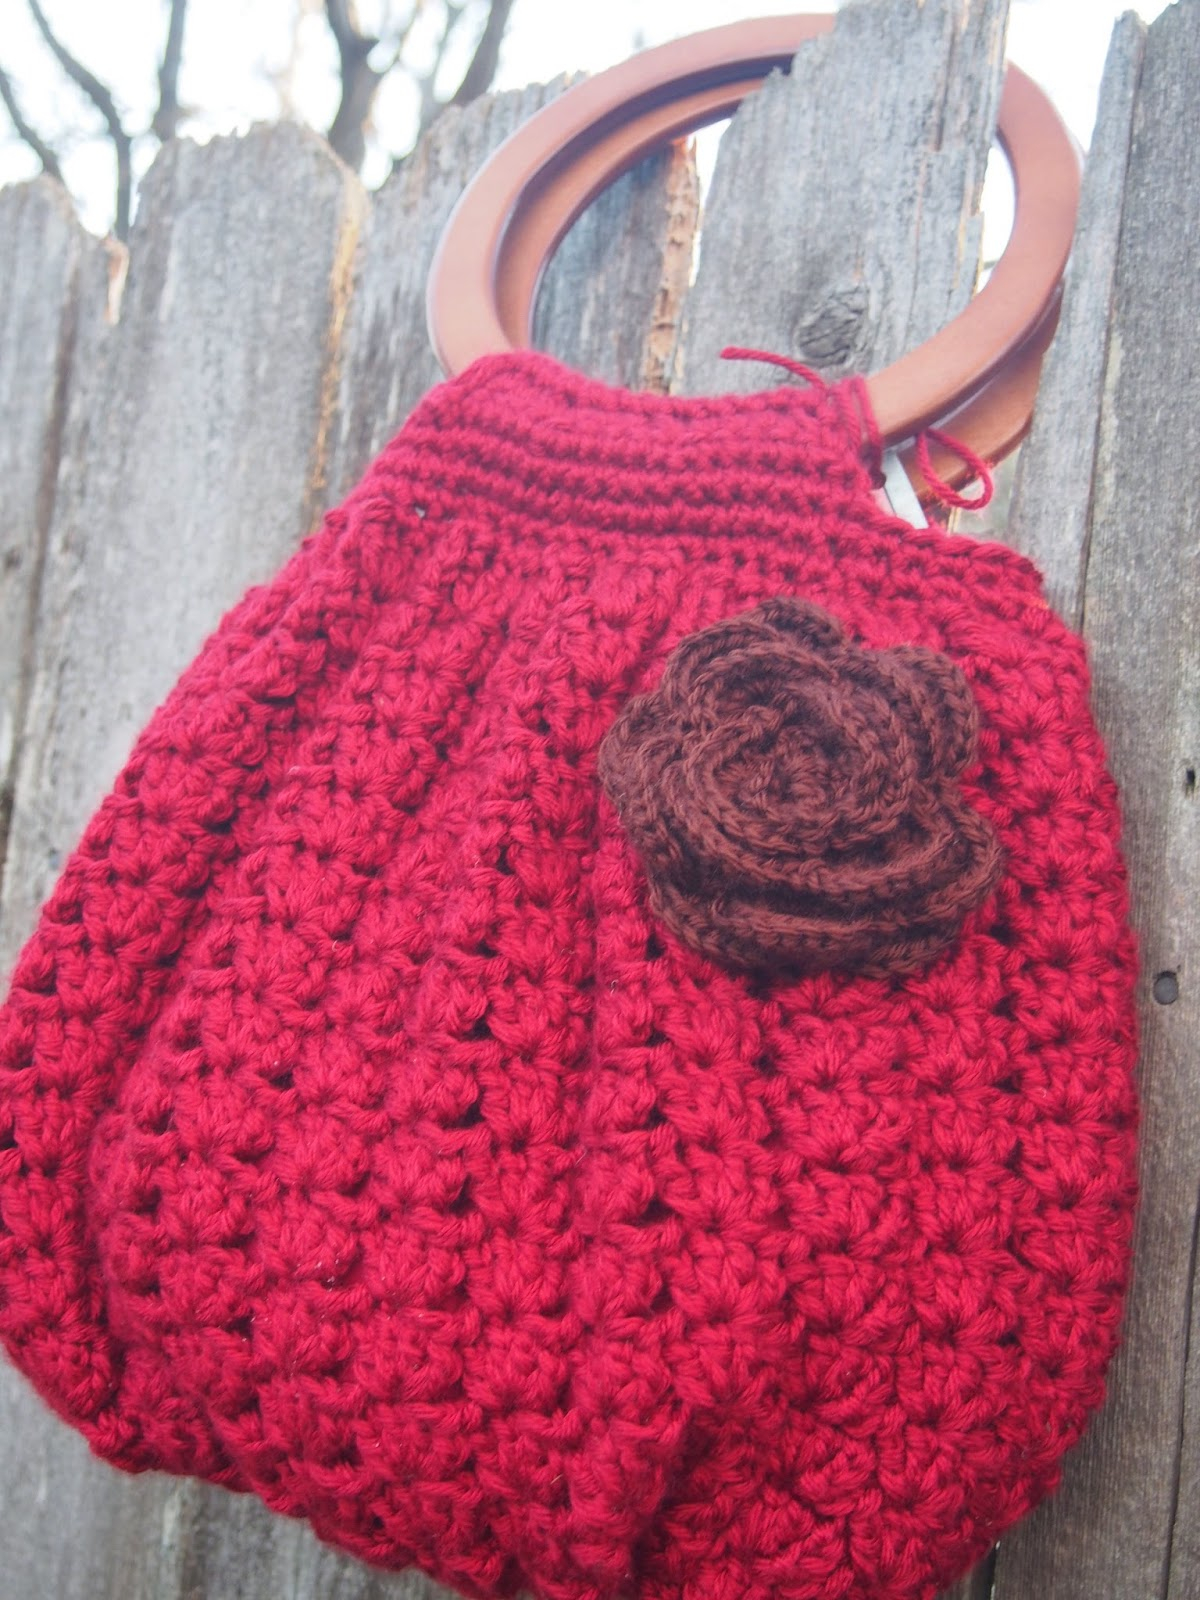 Crochet Hobo Bag Free Pattern Crochet Hobo Purse Free Pattern Meganyouhappycrochet